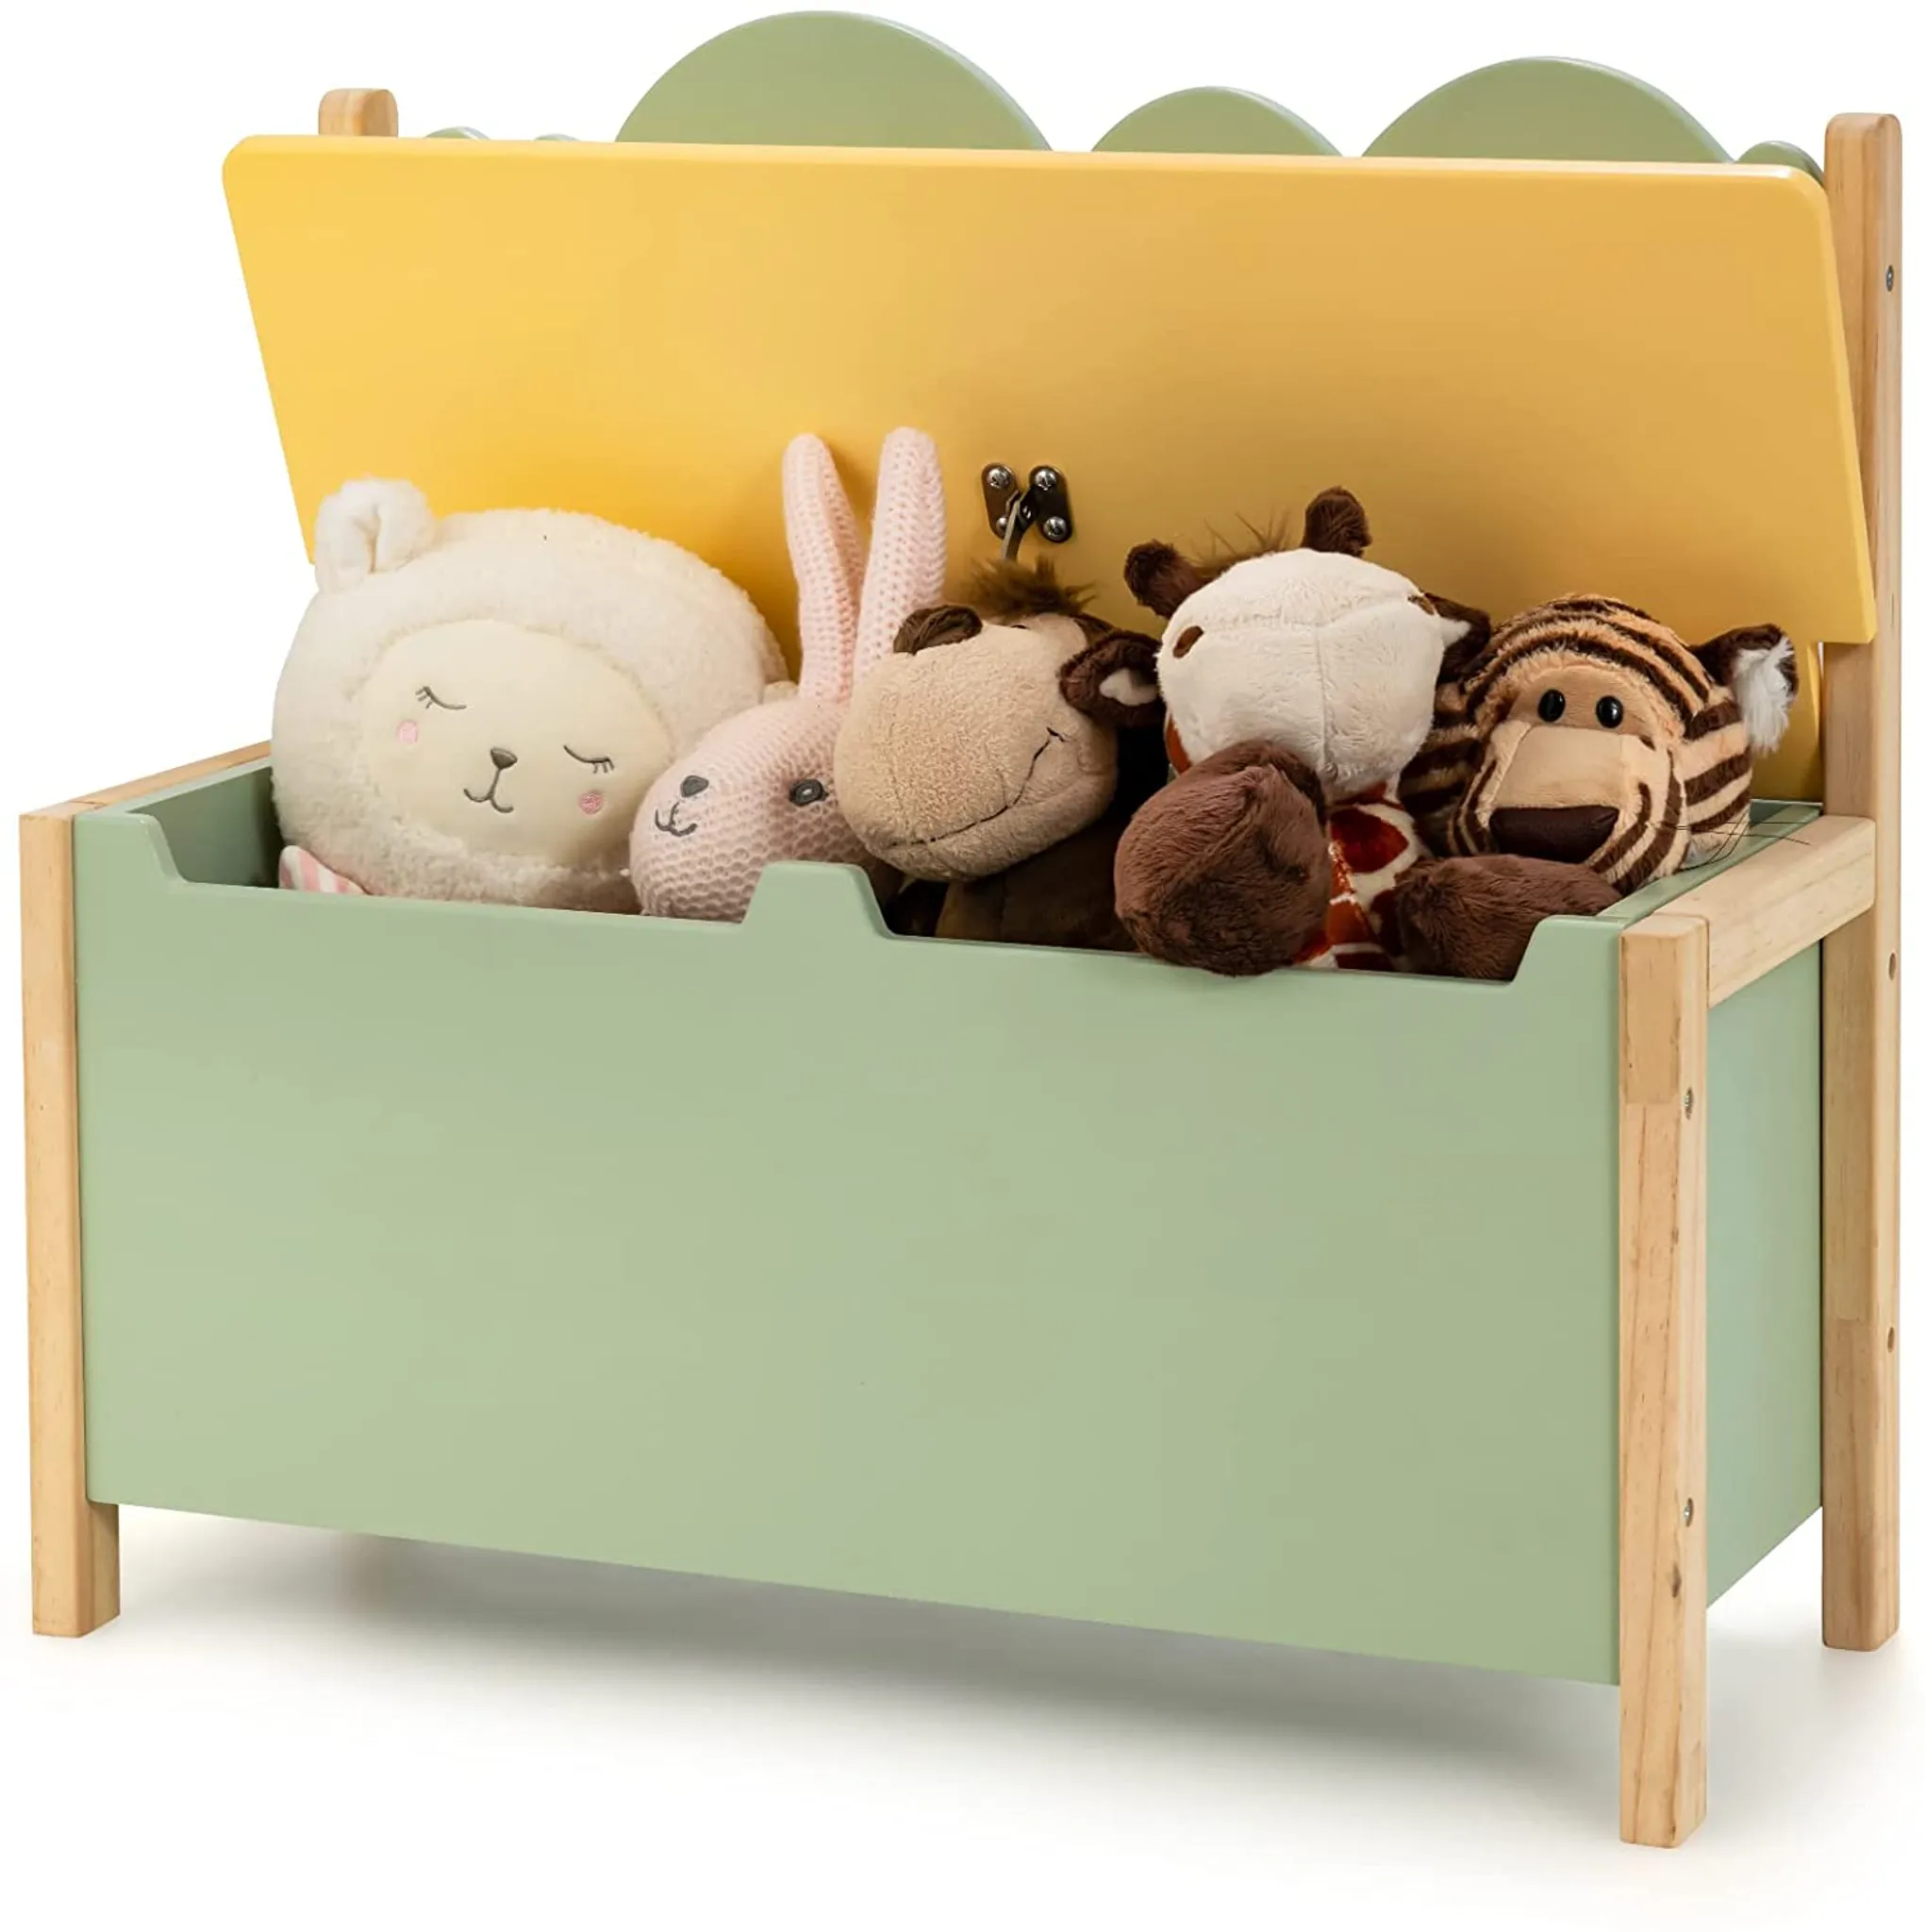 Kindertruhe, in Spielzeugkiste Holz, für Spielzeugtruhe aus Deckel, für 2 1 Kinder, Kinderzimmer Aufbewahrungsbox & Sitzbank mit Stauraum 60x26x52cm,